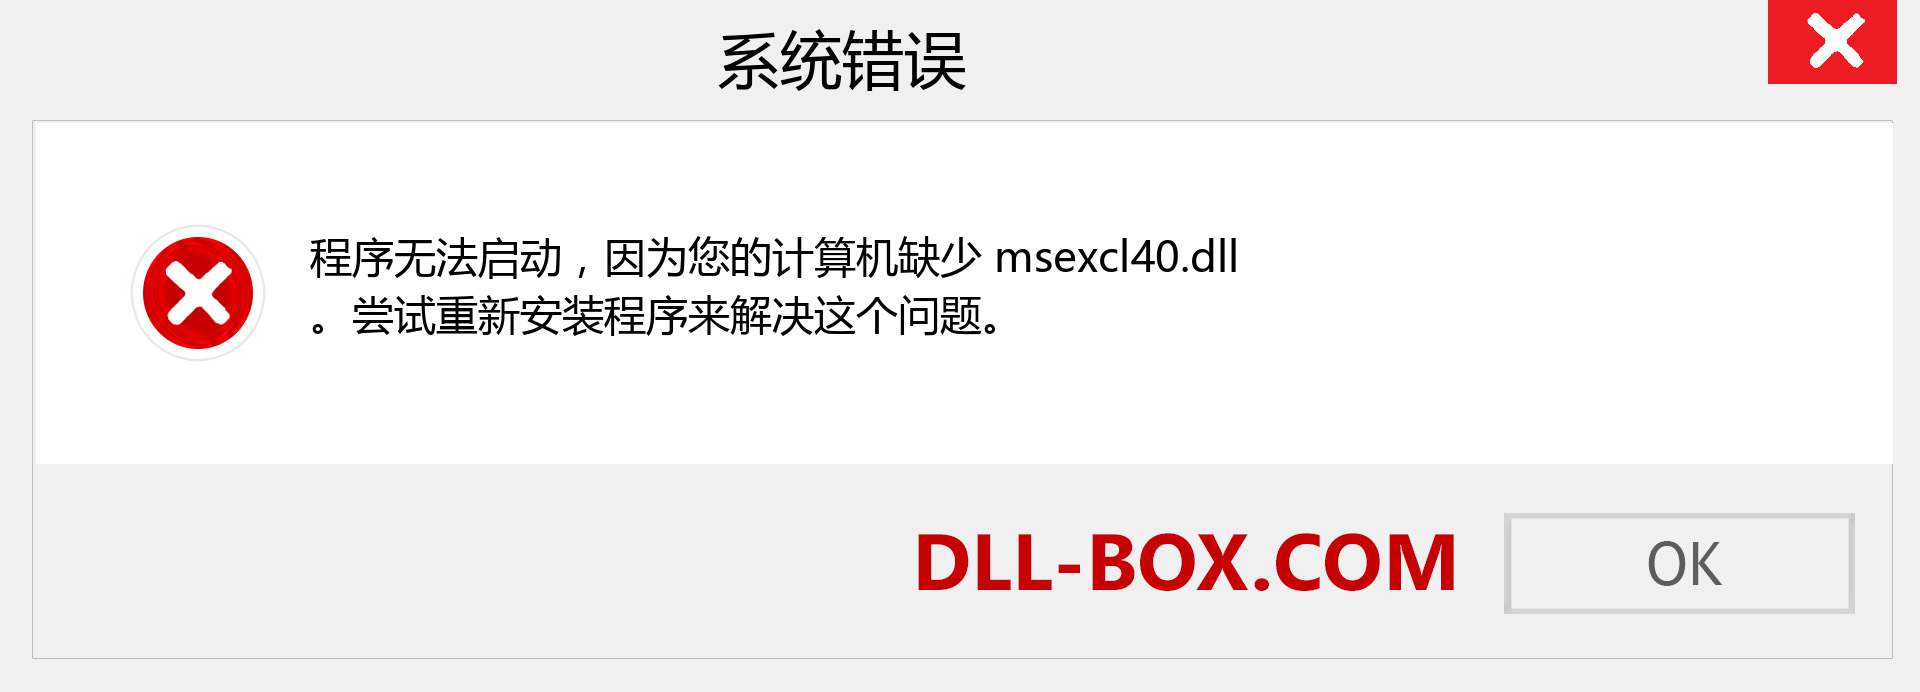 msexcl40.dll 文件丢失？。 适用于 Windows 7、8、10 的下载 - 修复 Windows、照片、图像上的 msexcl40 dll 丢失错误